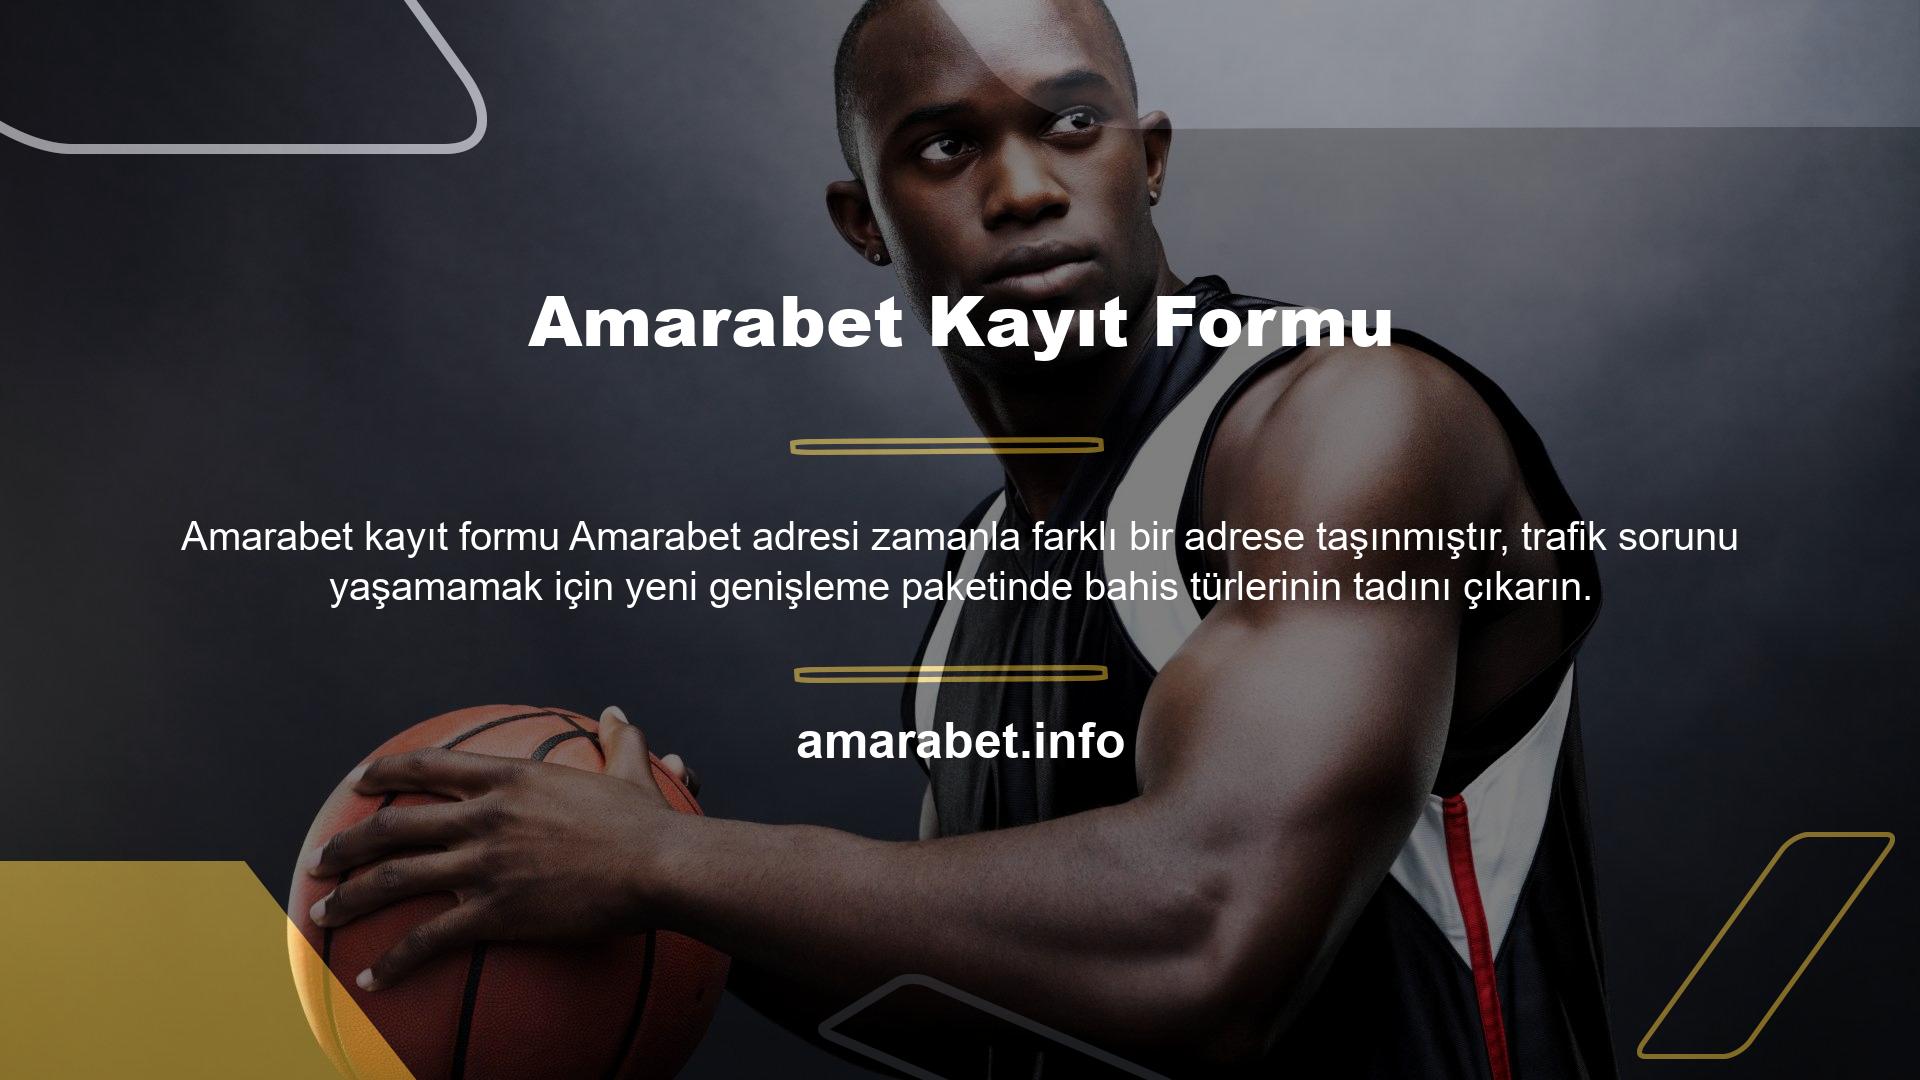 Amarabet online bahis tüyoları ile bahisçilerin 24 saat içerisinde keyifle oynayabilecekleri ve para kazanabilecekleri her maç, güncellenen sayfada her maçı 24 saat içerisinde oynama şansına sahiptir